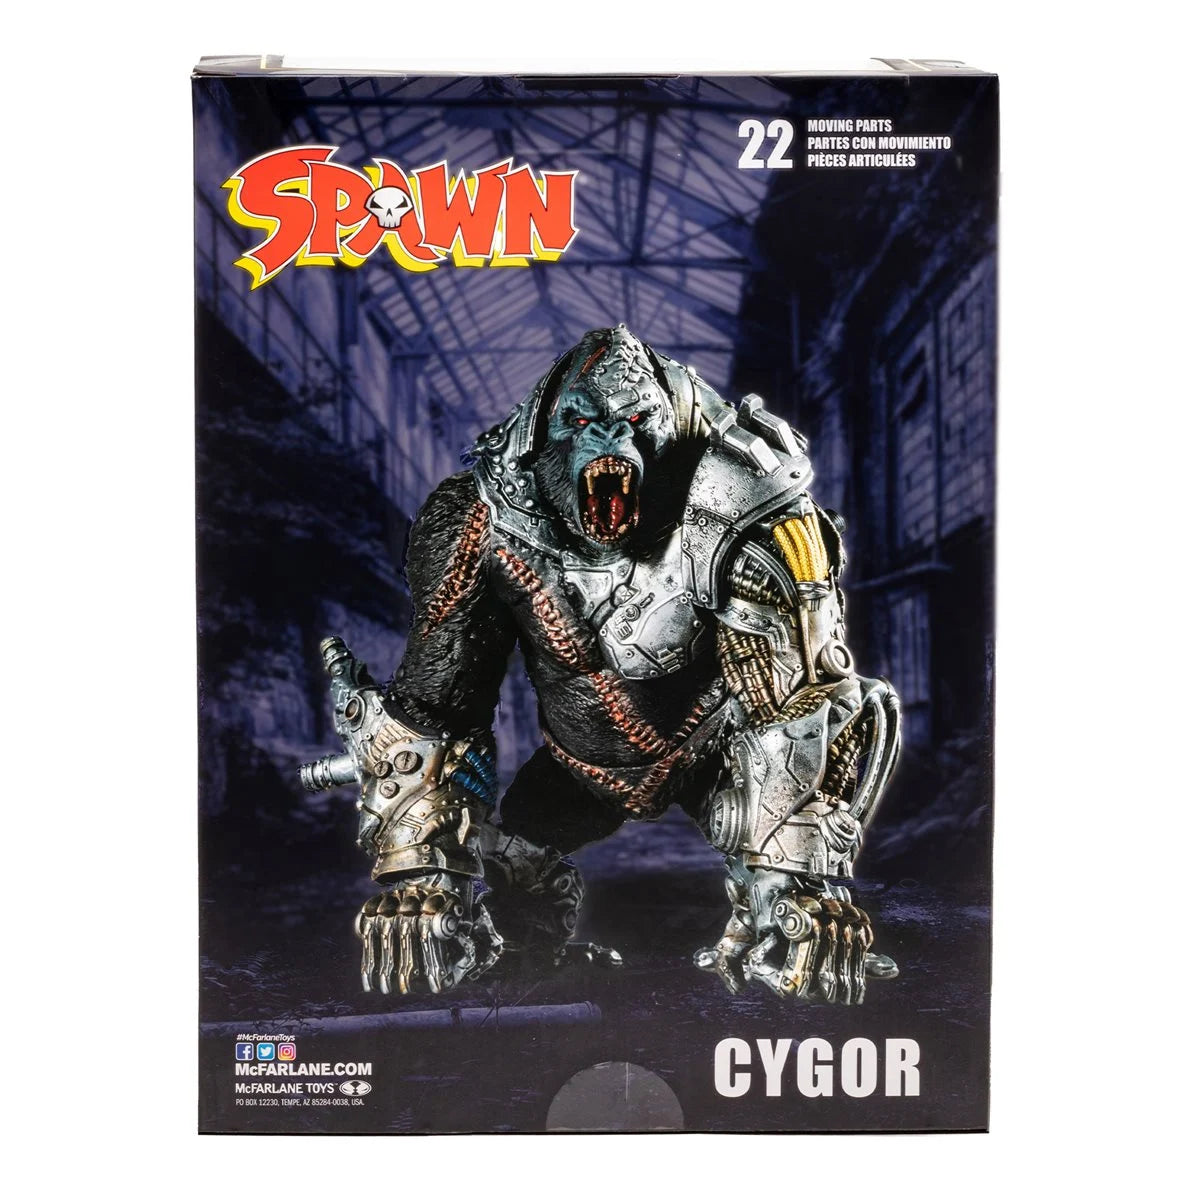 Spawn Cygor Megafig Action Figure PRECIO $ 1000